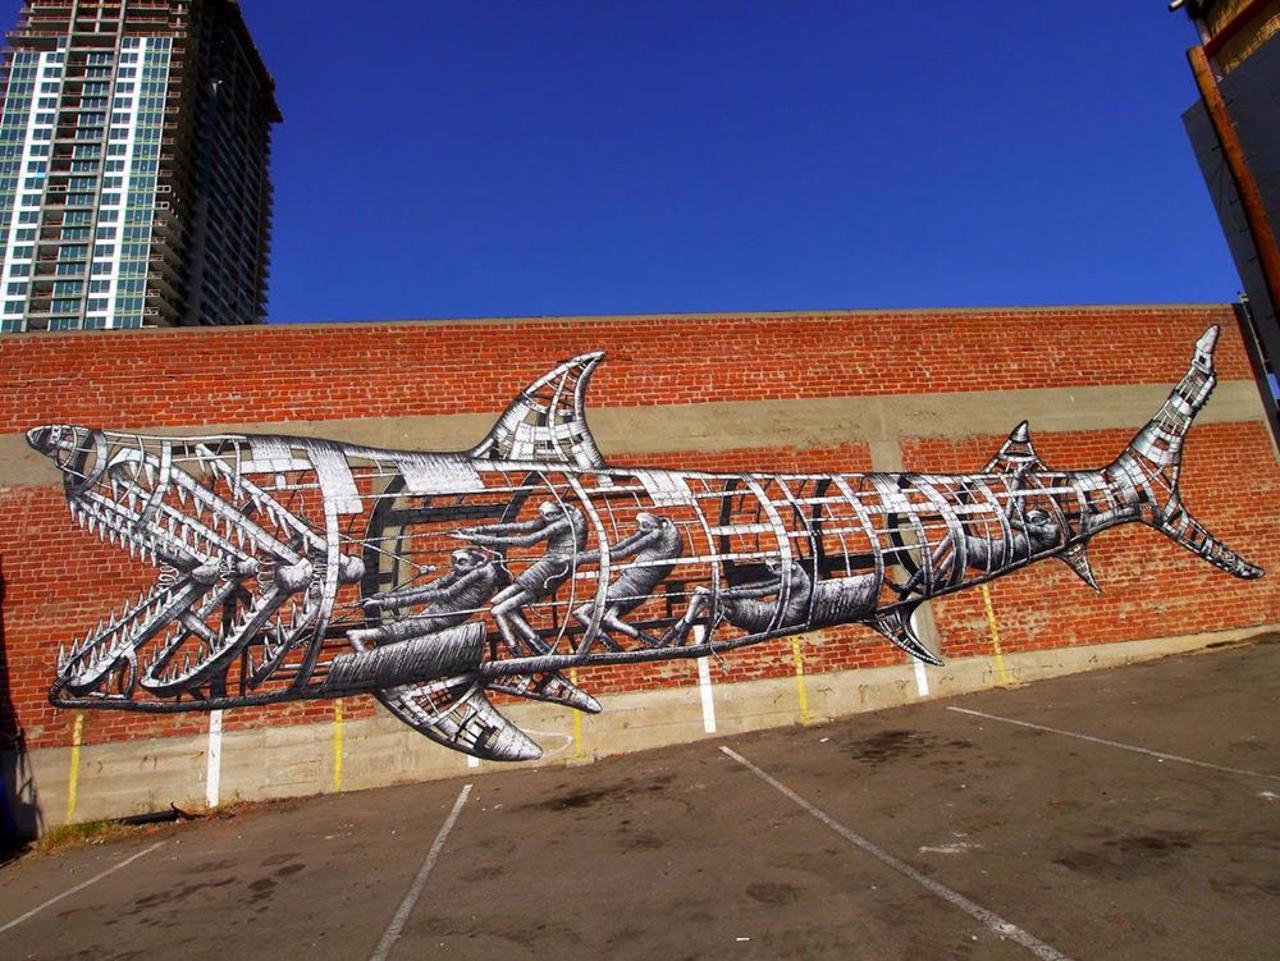 RT @DanielGennaoui: Coolest mechanical shark mural. Check out more: http://buff.ly/1xsCQDL #graffiti #urbanart #artist http://t.co/ij6FLmVk94